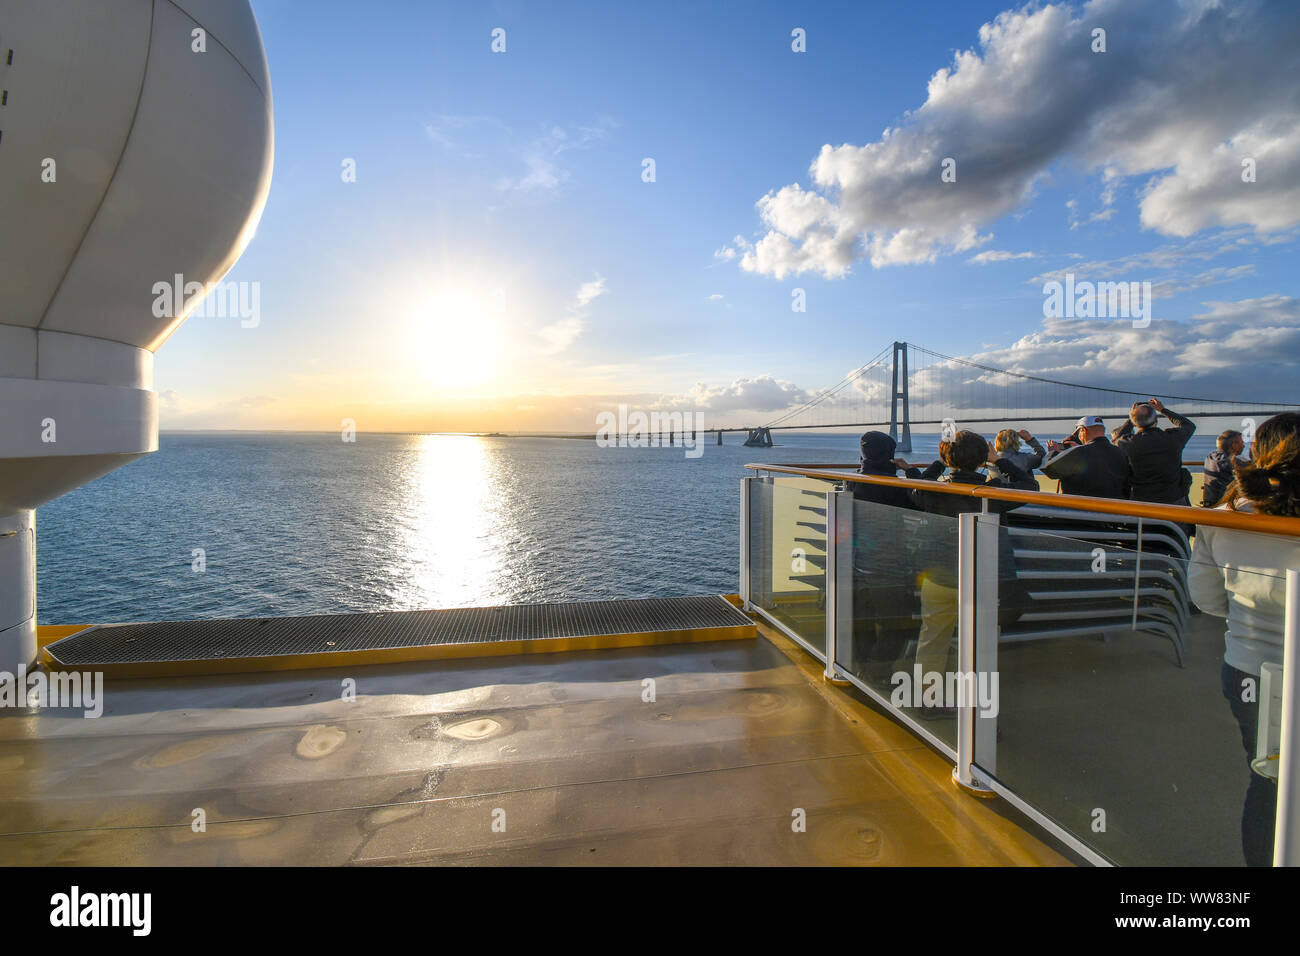 Turistas que toman fotos en la cubierta superior, como un barco de crucero se prepara para pasar bajo el puente de Oresund el estrecho entre Suecia y Dinamarca. Foto de stock